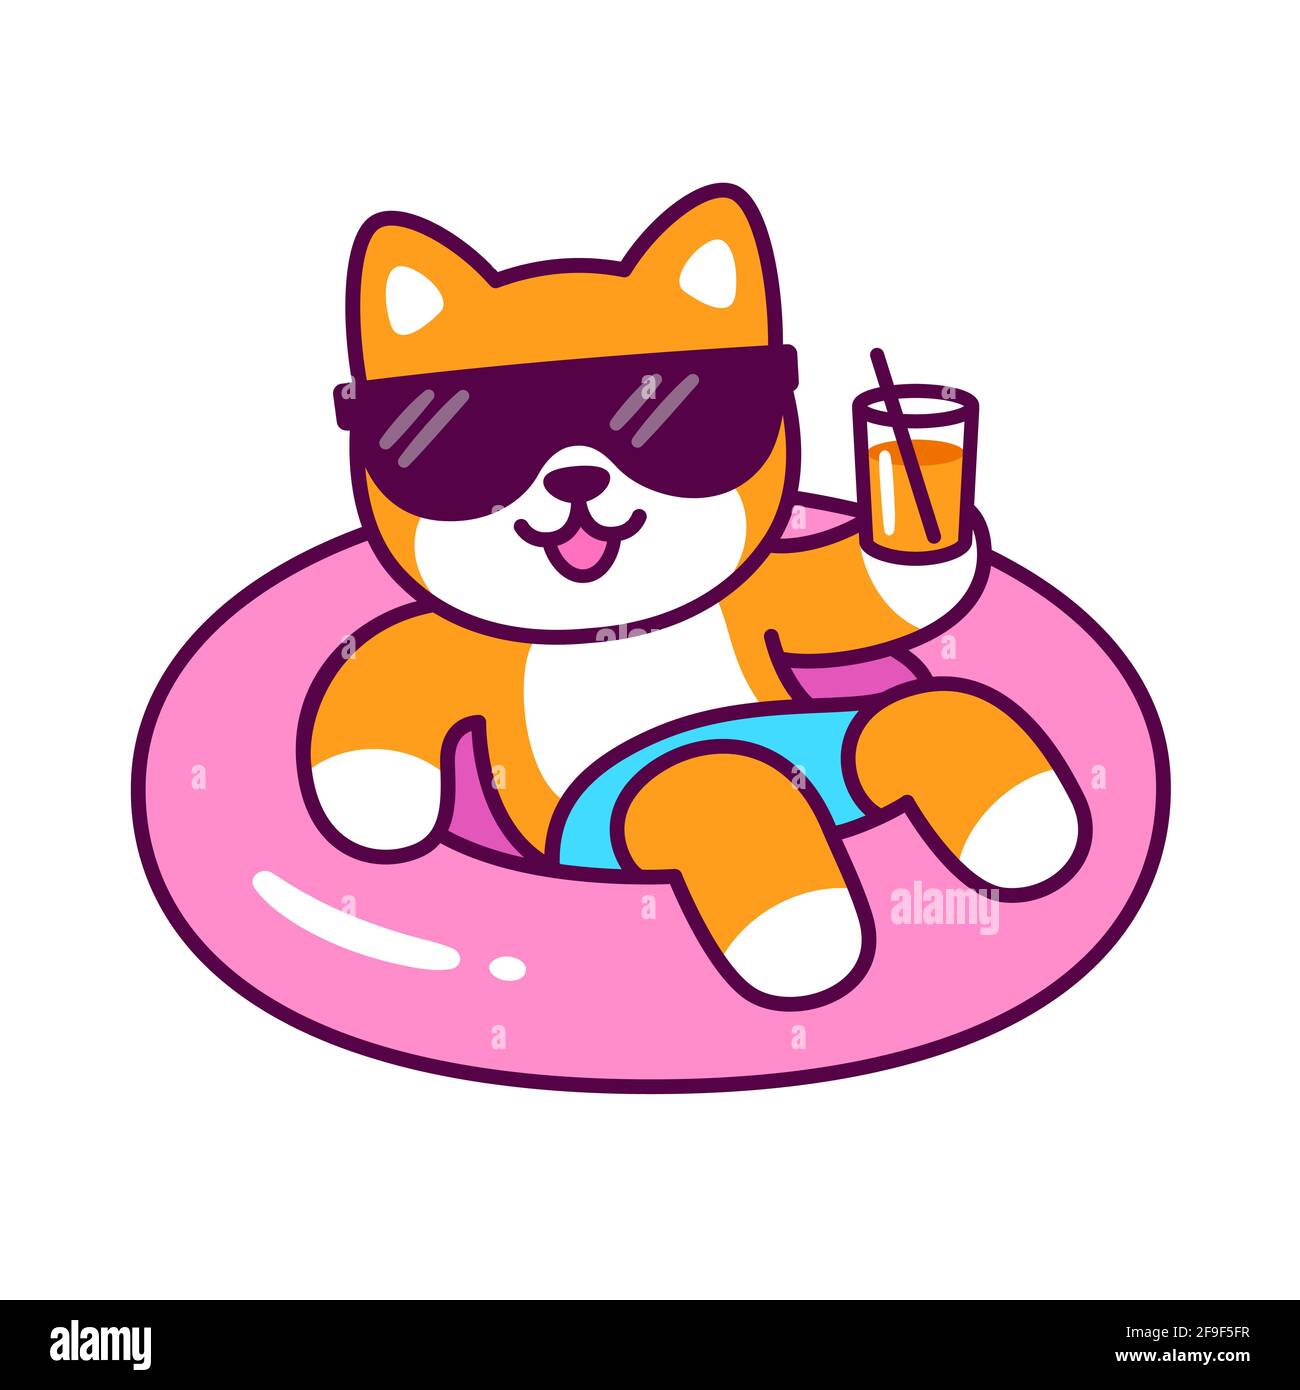 Simpatico cane fumetto in occhiali da sole sul galleggiante della piscina che tiene un bicchiere di bevanda. Carino personaggio Shiba Inu durante la festa estiva in piscina. Immagine vettoriale clip art. Illustrazione Vettoriale